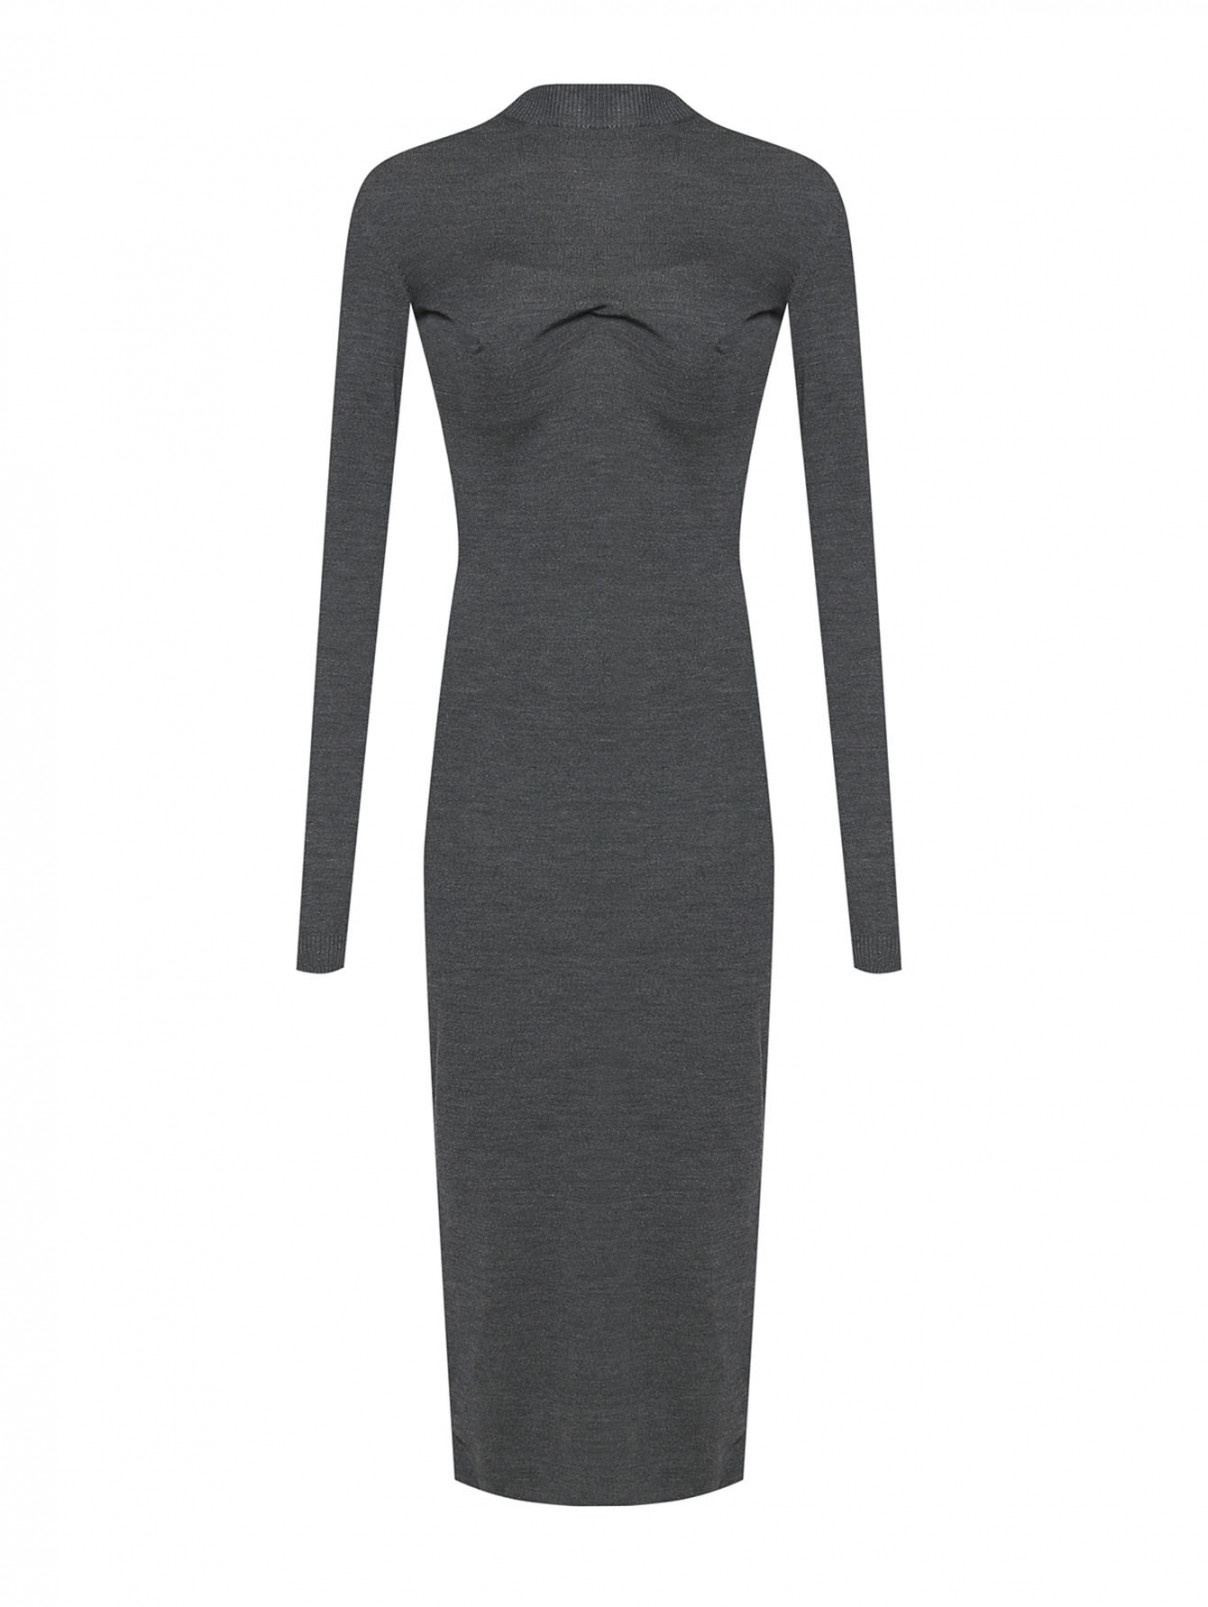 Однотонное платье из шерсти со сборкой Sportmax  –  Общий вид  – Цвет:  Серый